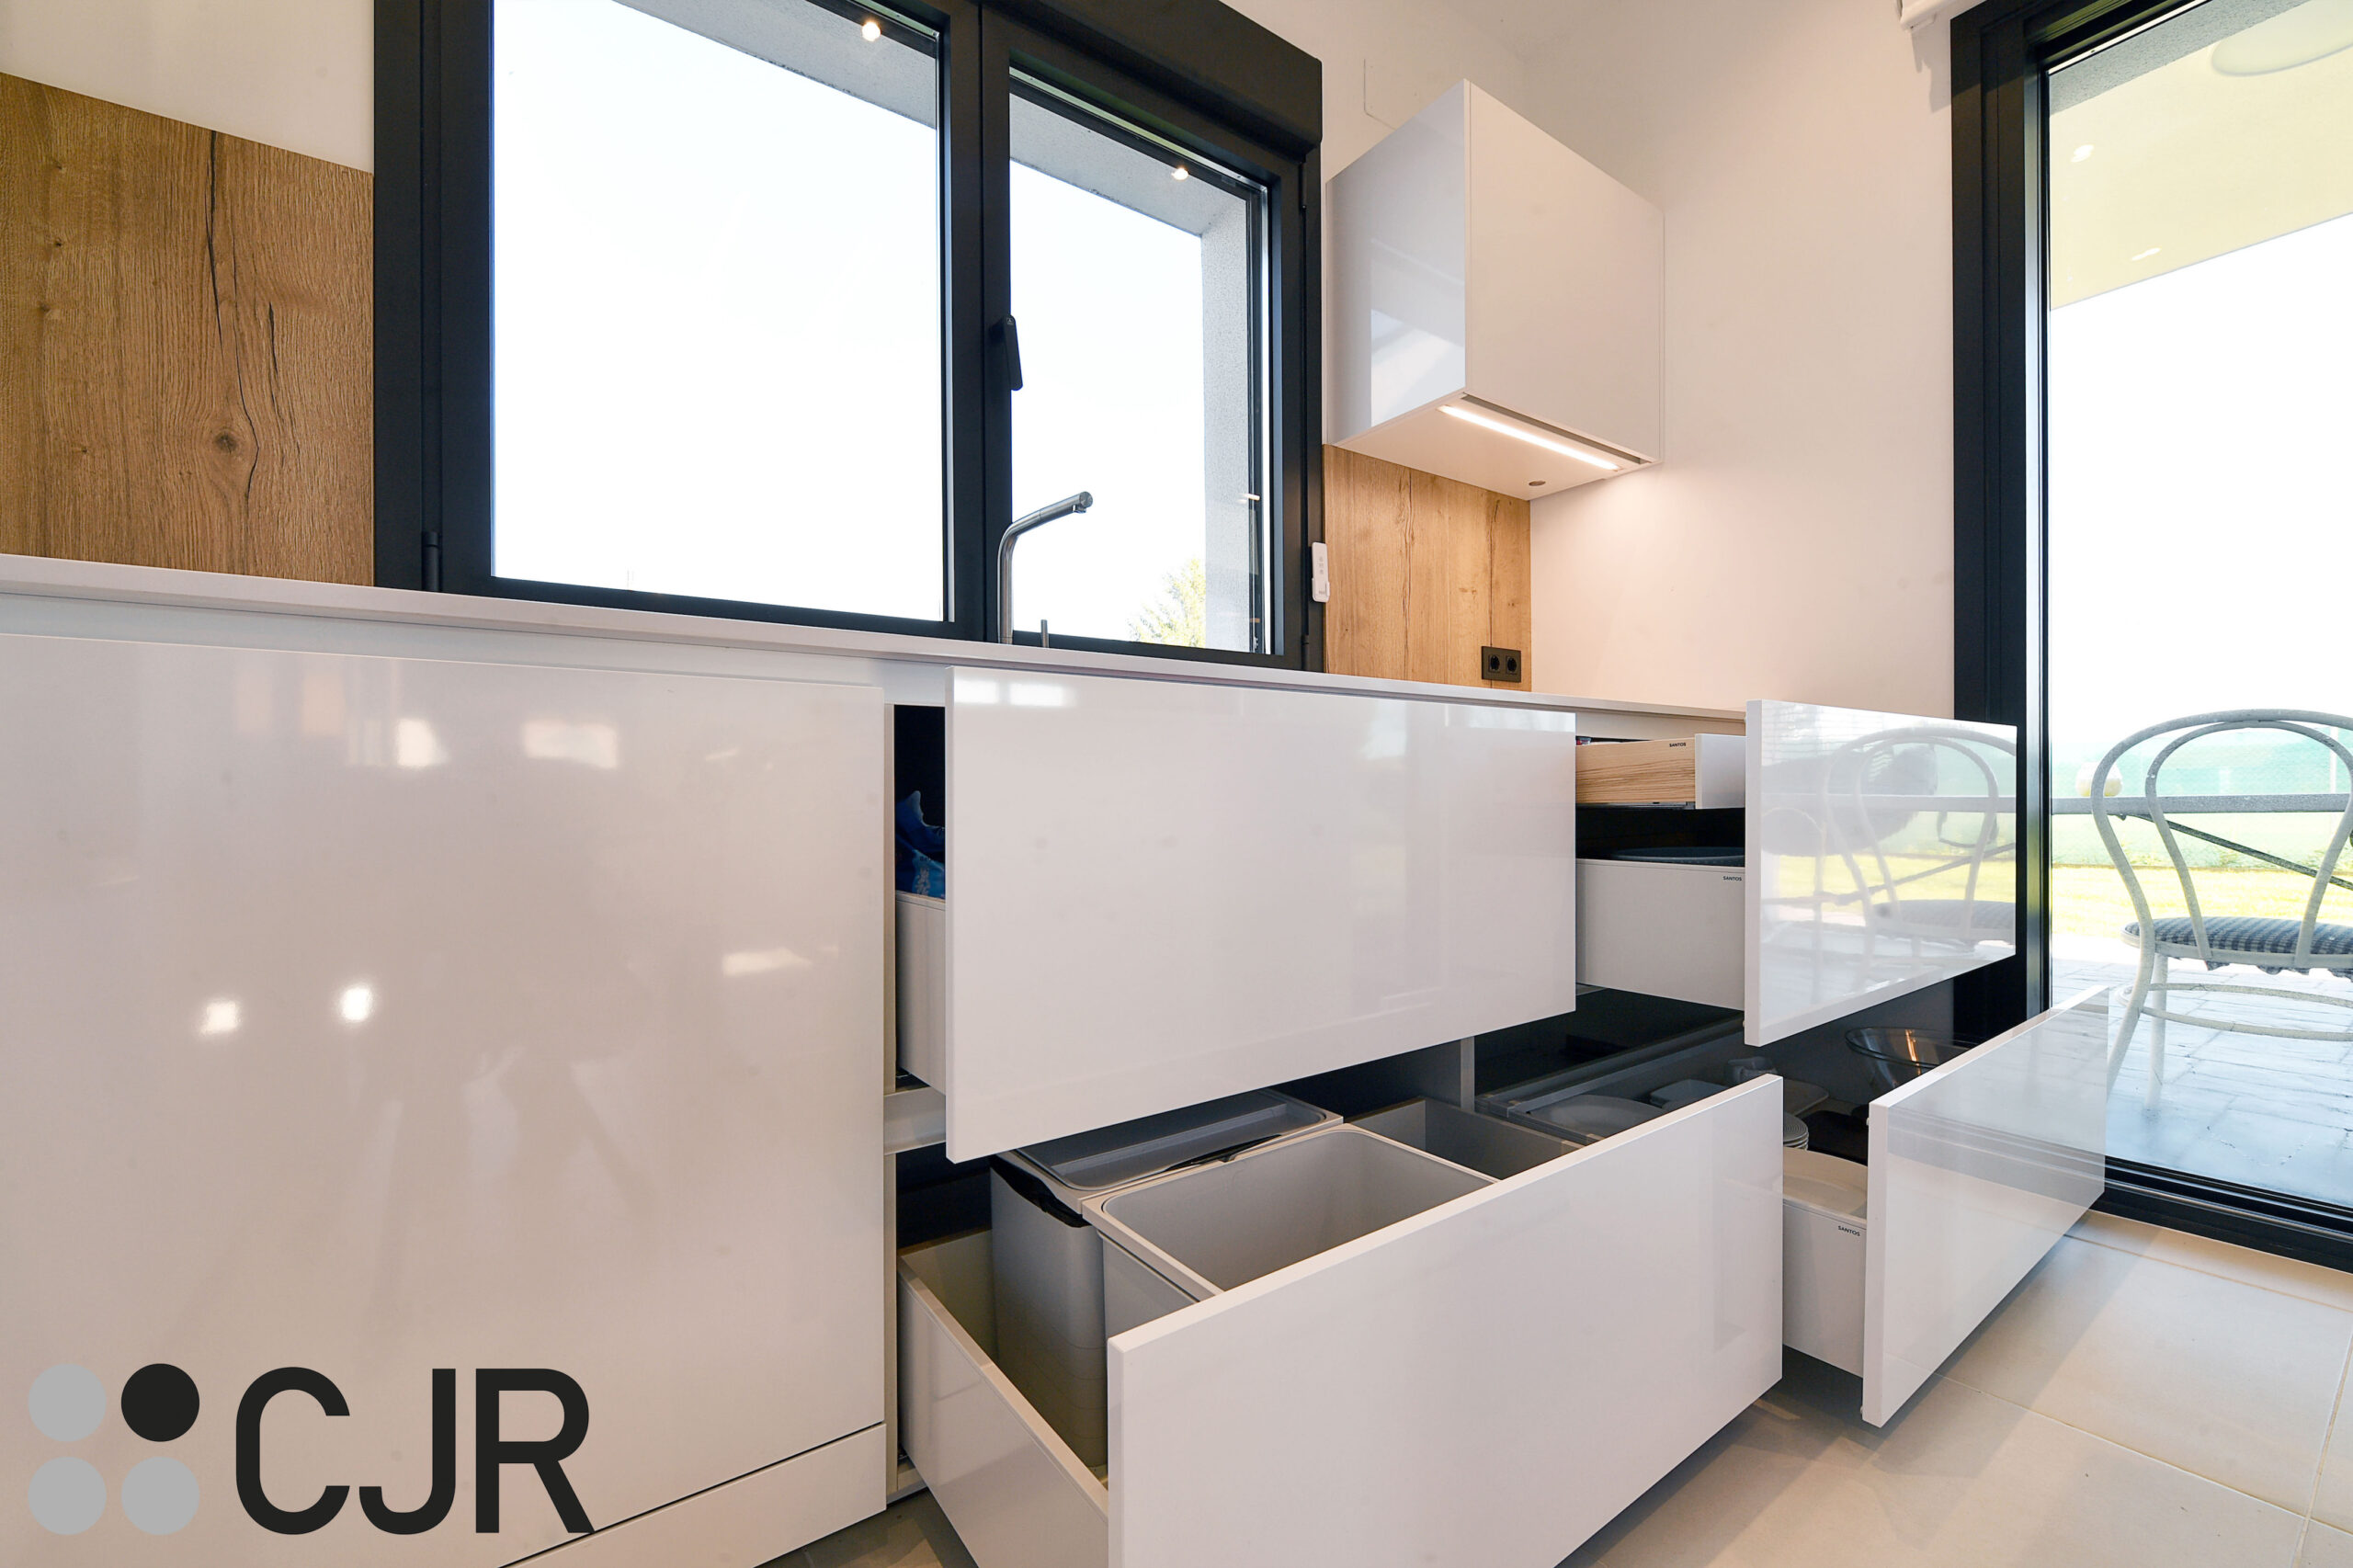 muebles bajos amplios de cocina en blanco cjr